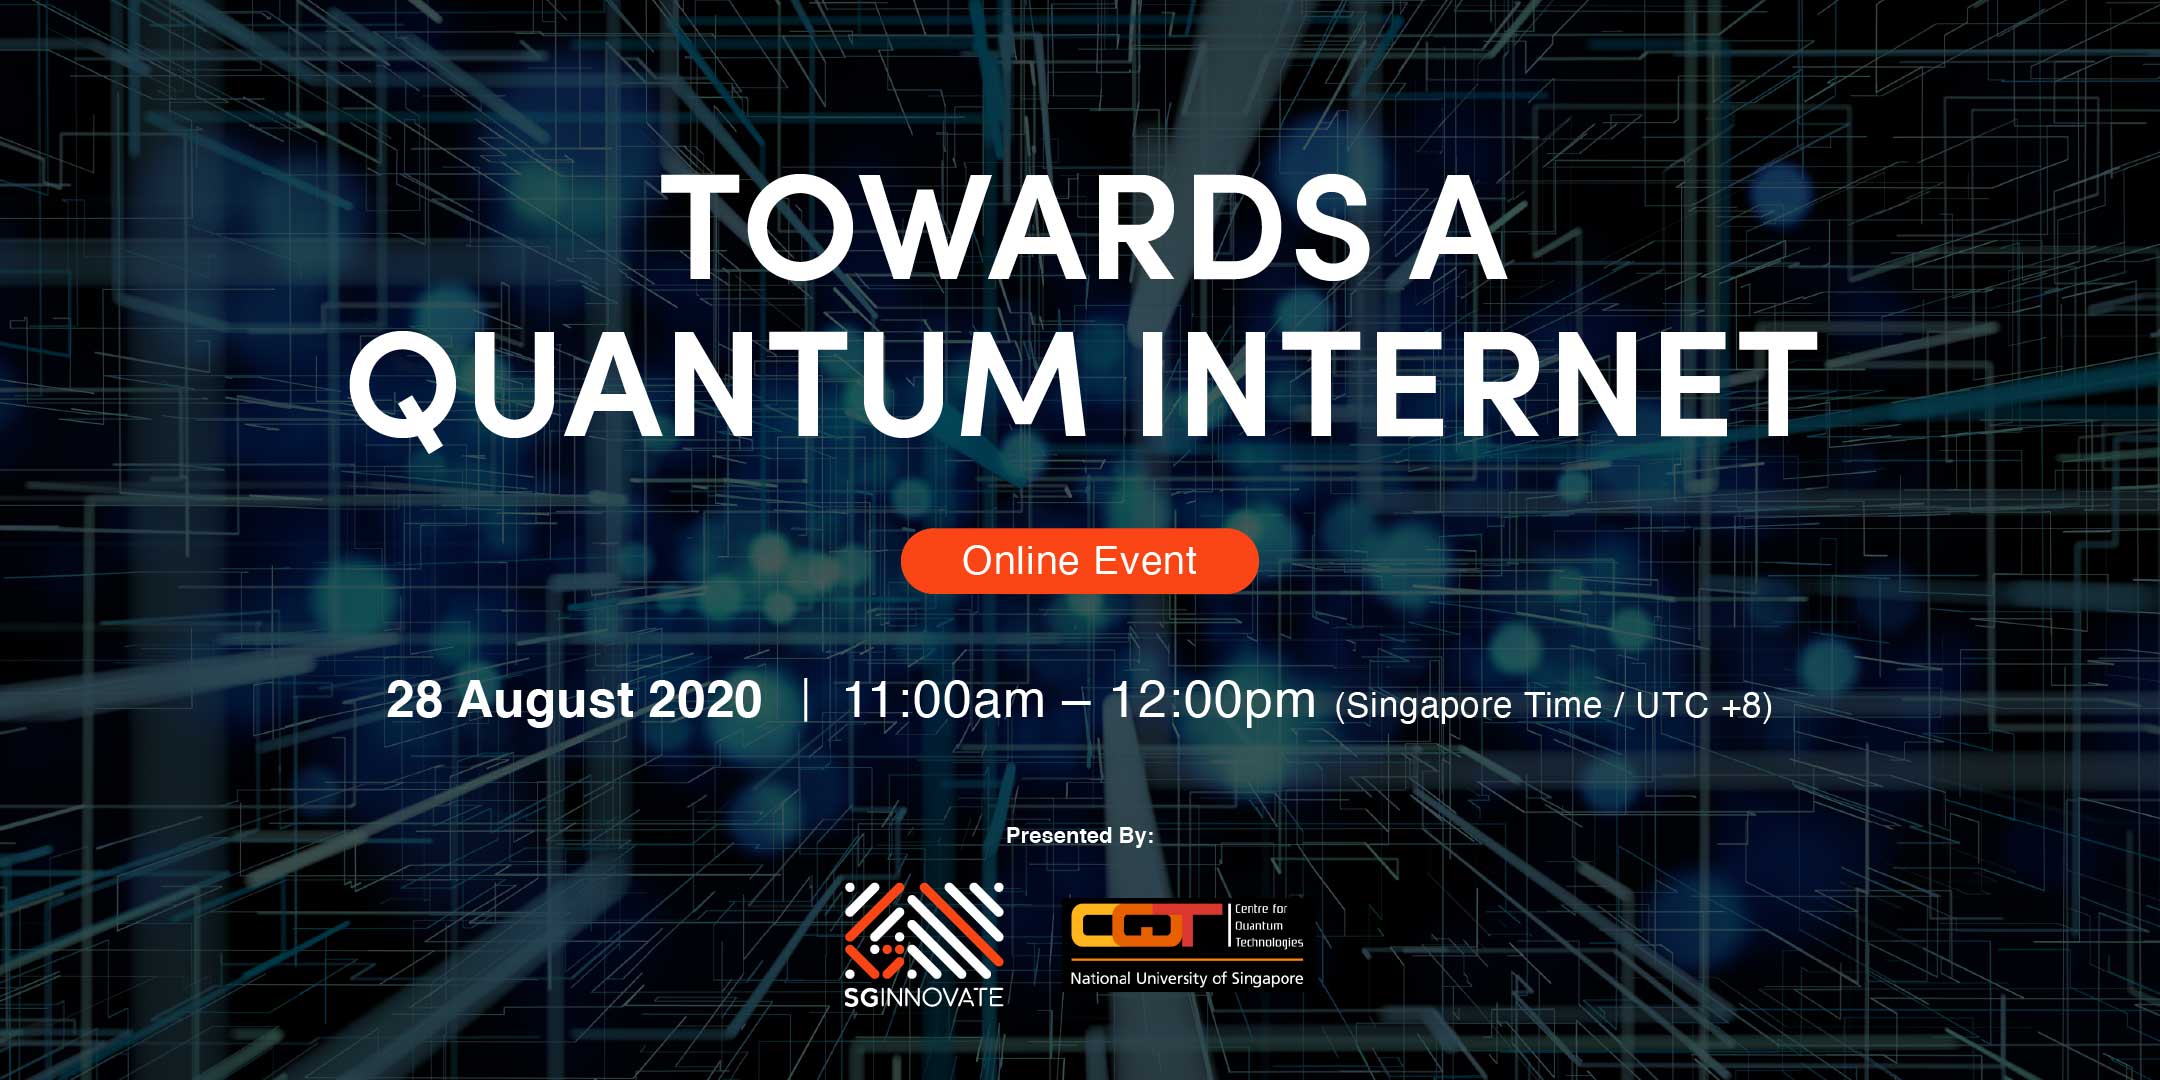 Towards a Quantum Internet